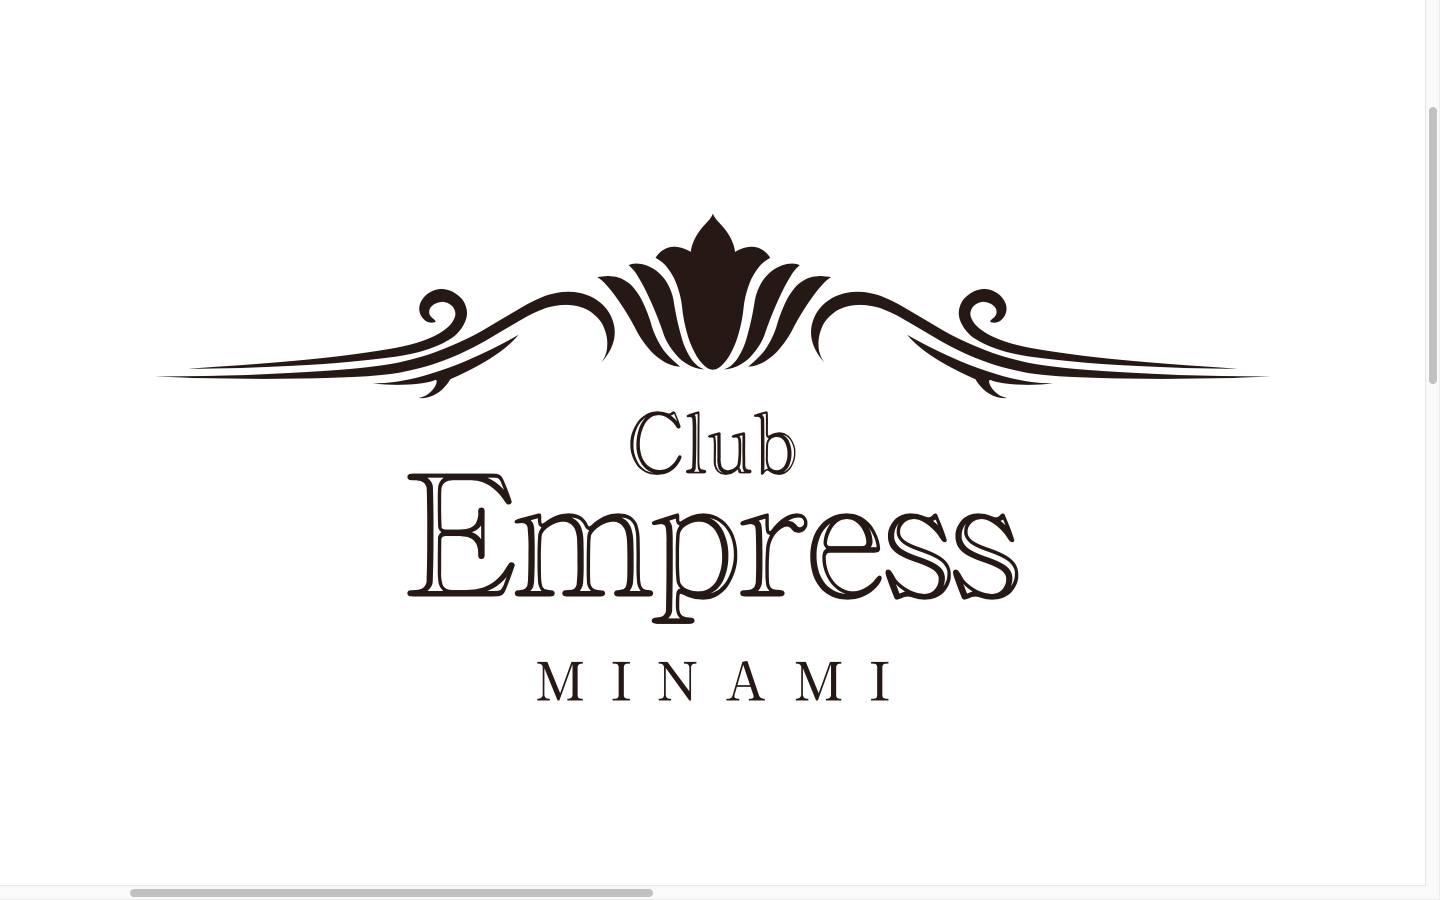 EMPRESS MINAMI(エンプレスミナミ)